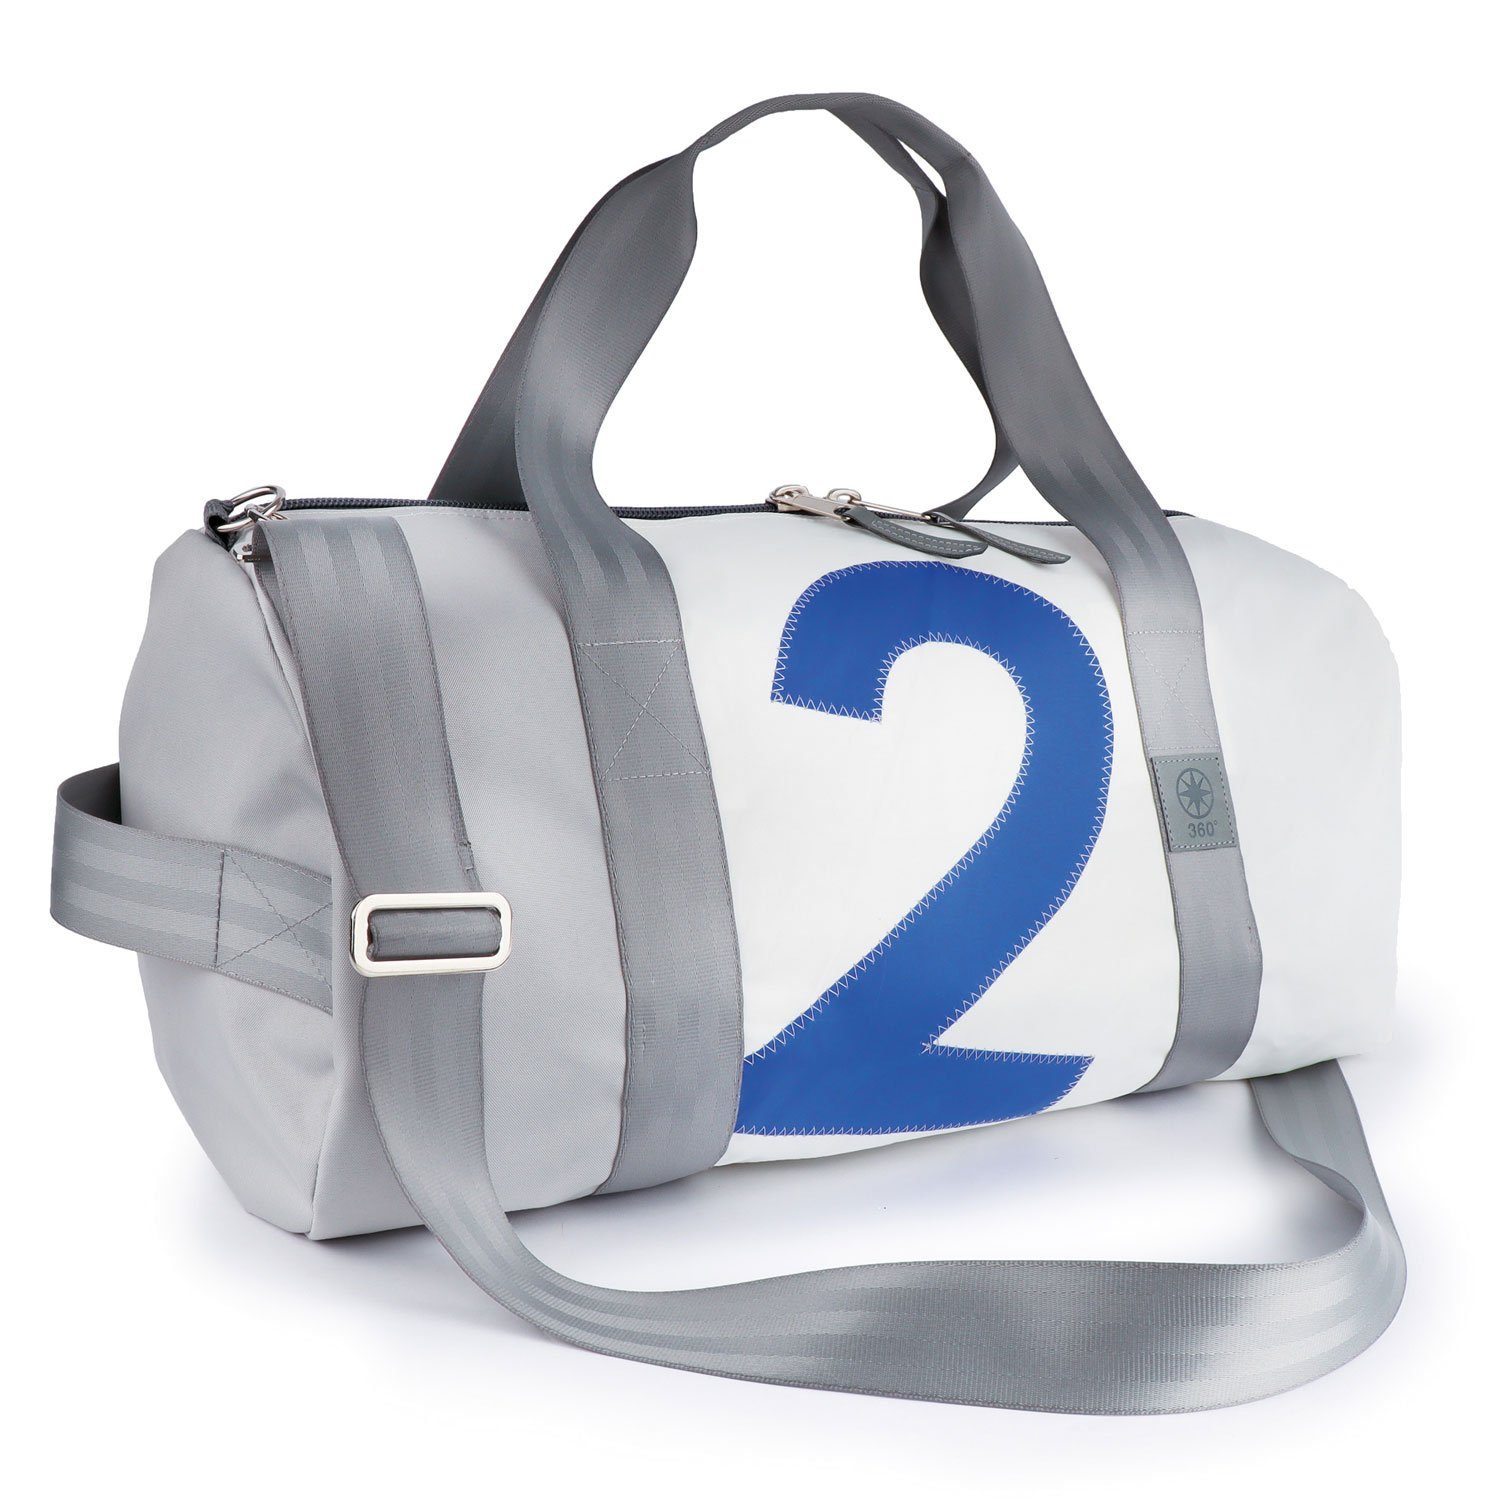 Pirat 360Grad Zahl blau Umhänge-Tasche Reisetasche Segeltuch weiß-grau,